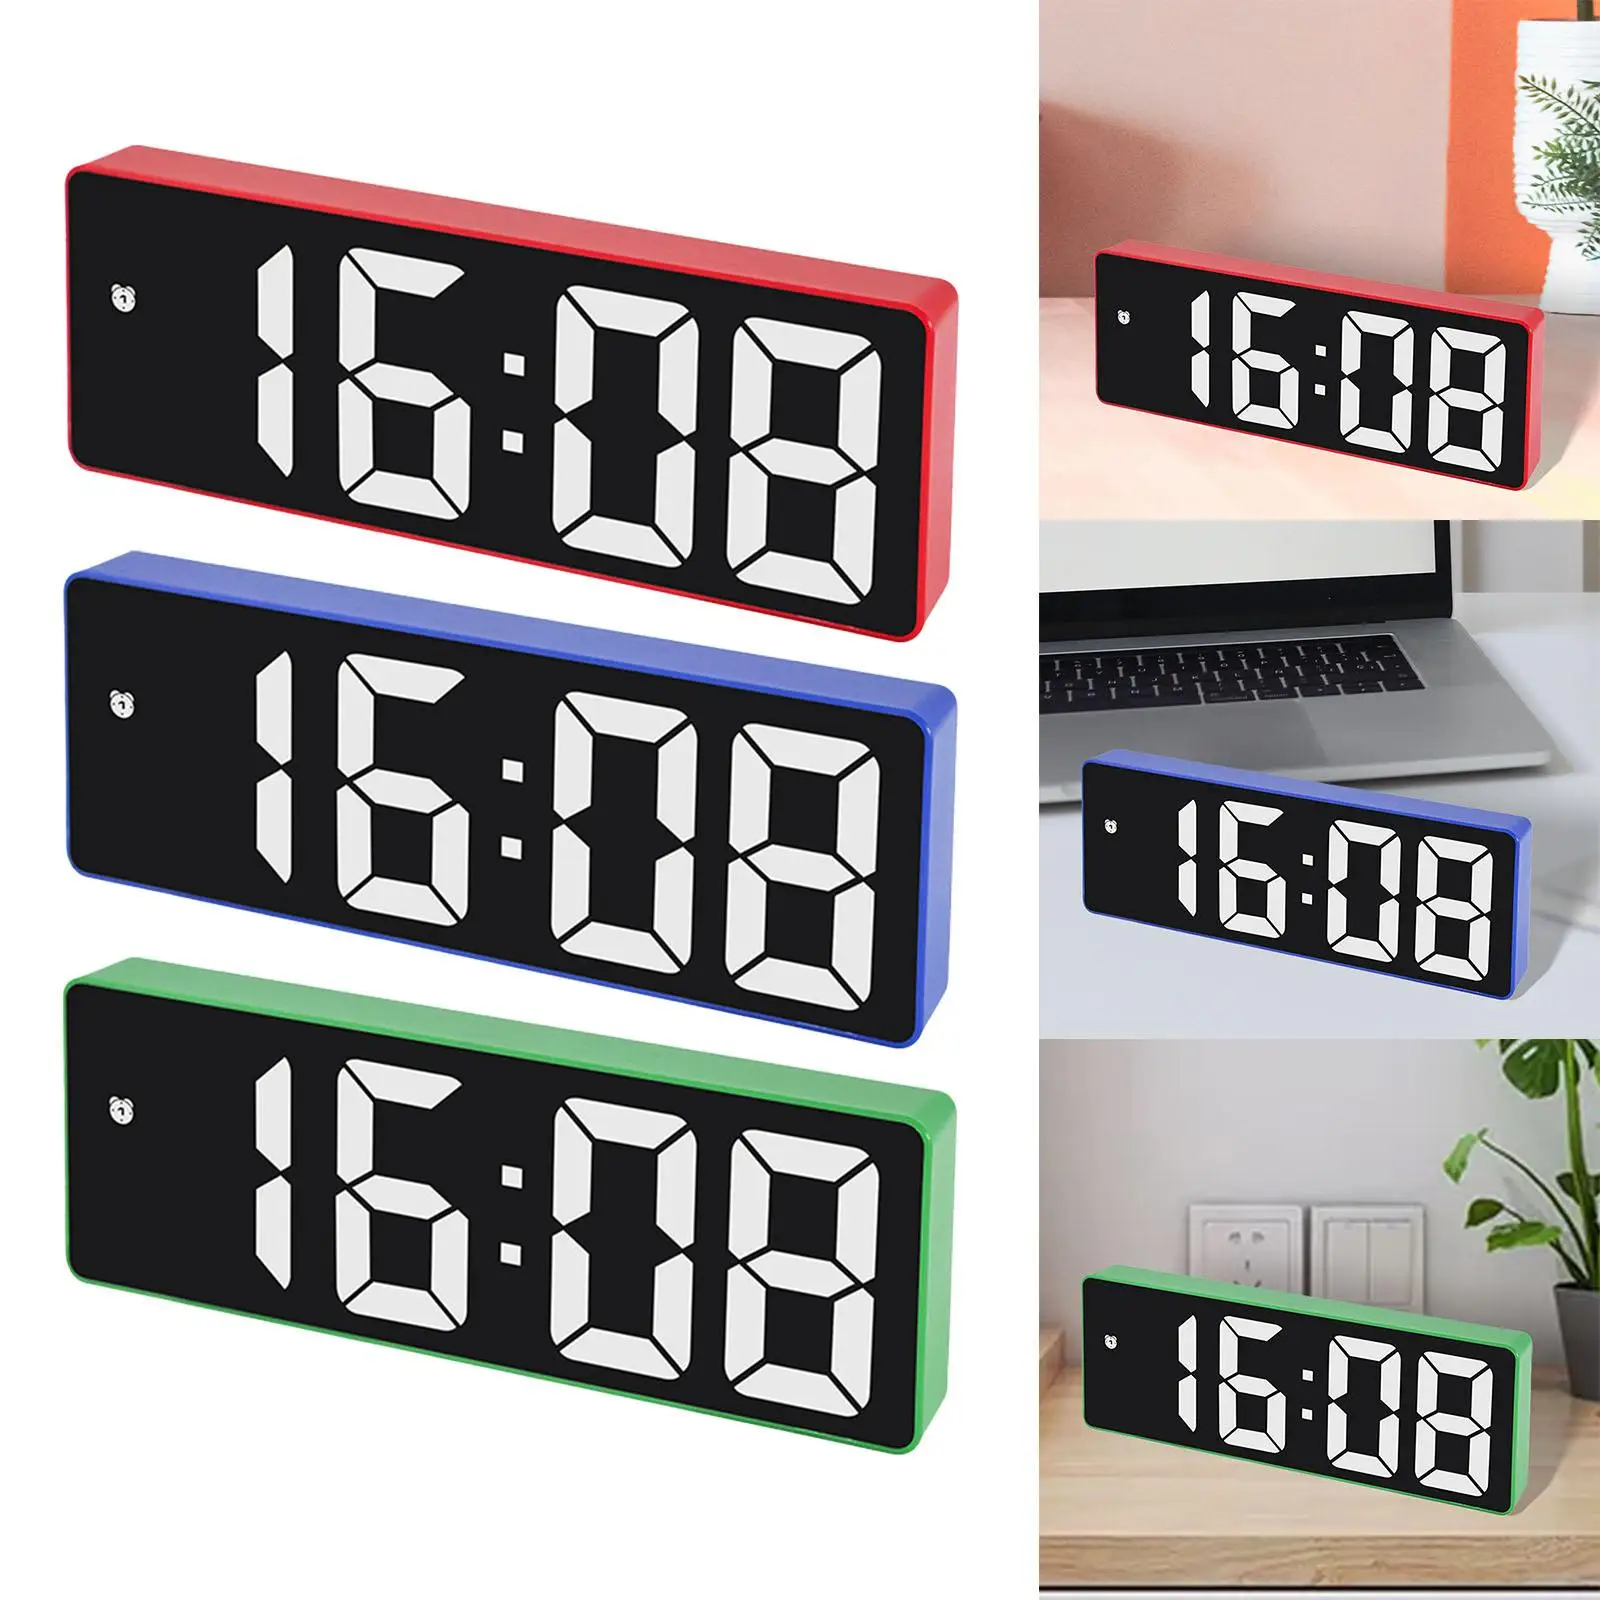 Digital Alarm Clock 6.3 inch Large Display 12/24H for Office Bedside Kids